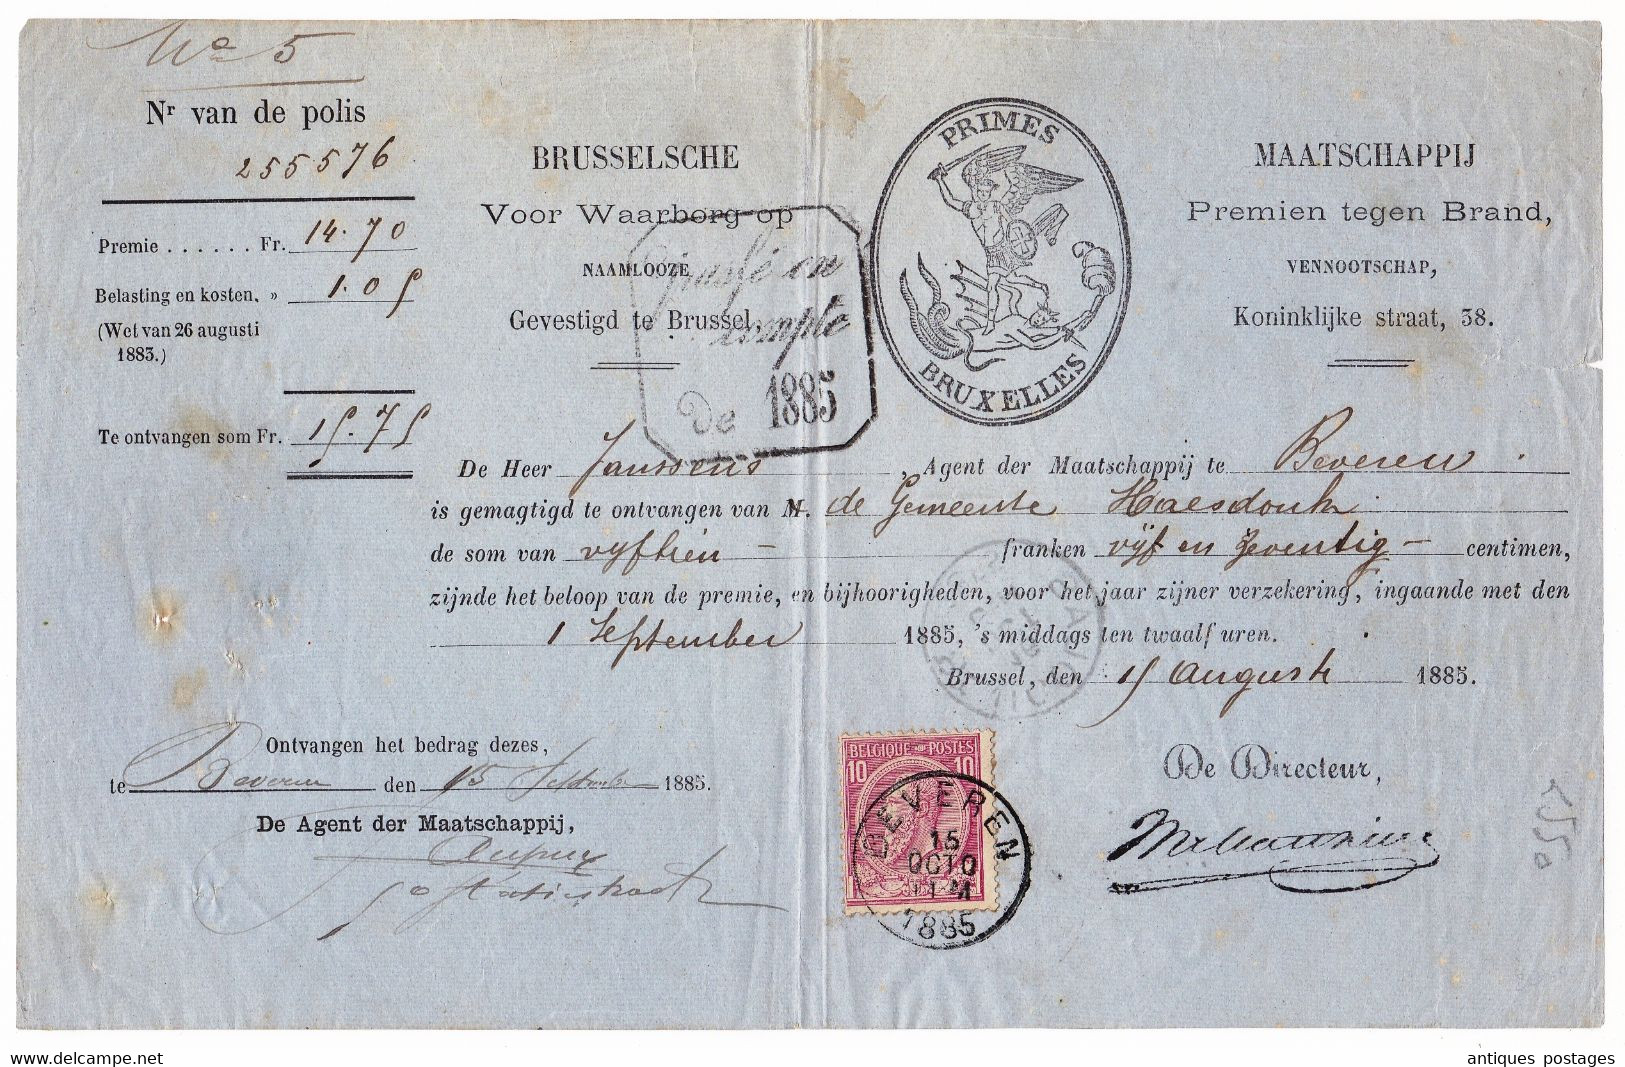 Belgique 1885 Primes Bruxelles Saint-Nicolas Beveren Maatschappij Premien Tegen Brand - 1883 Leopold II.